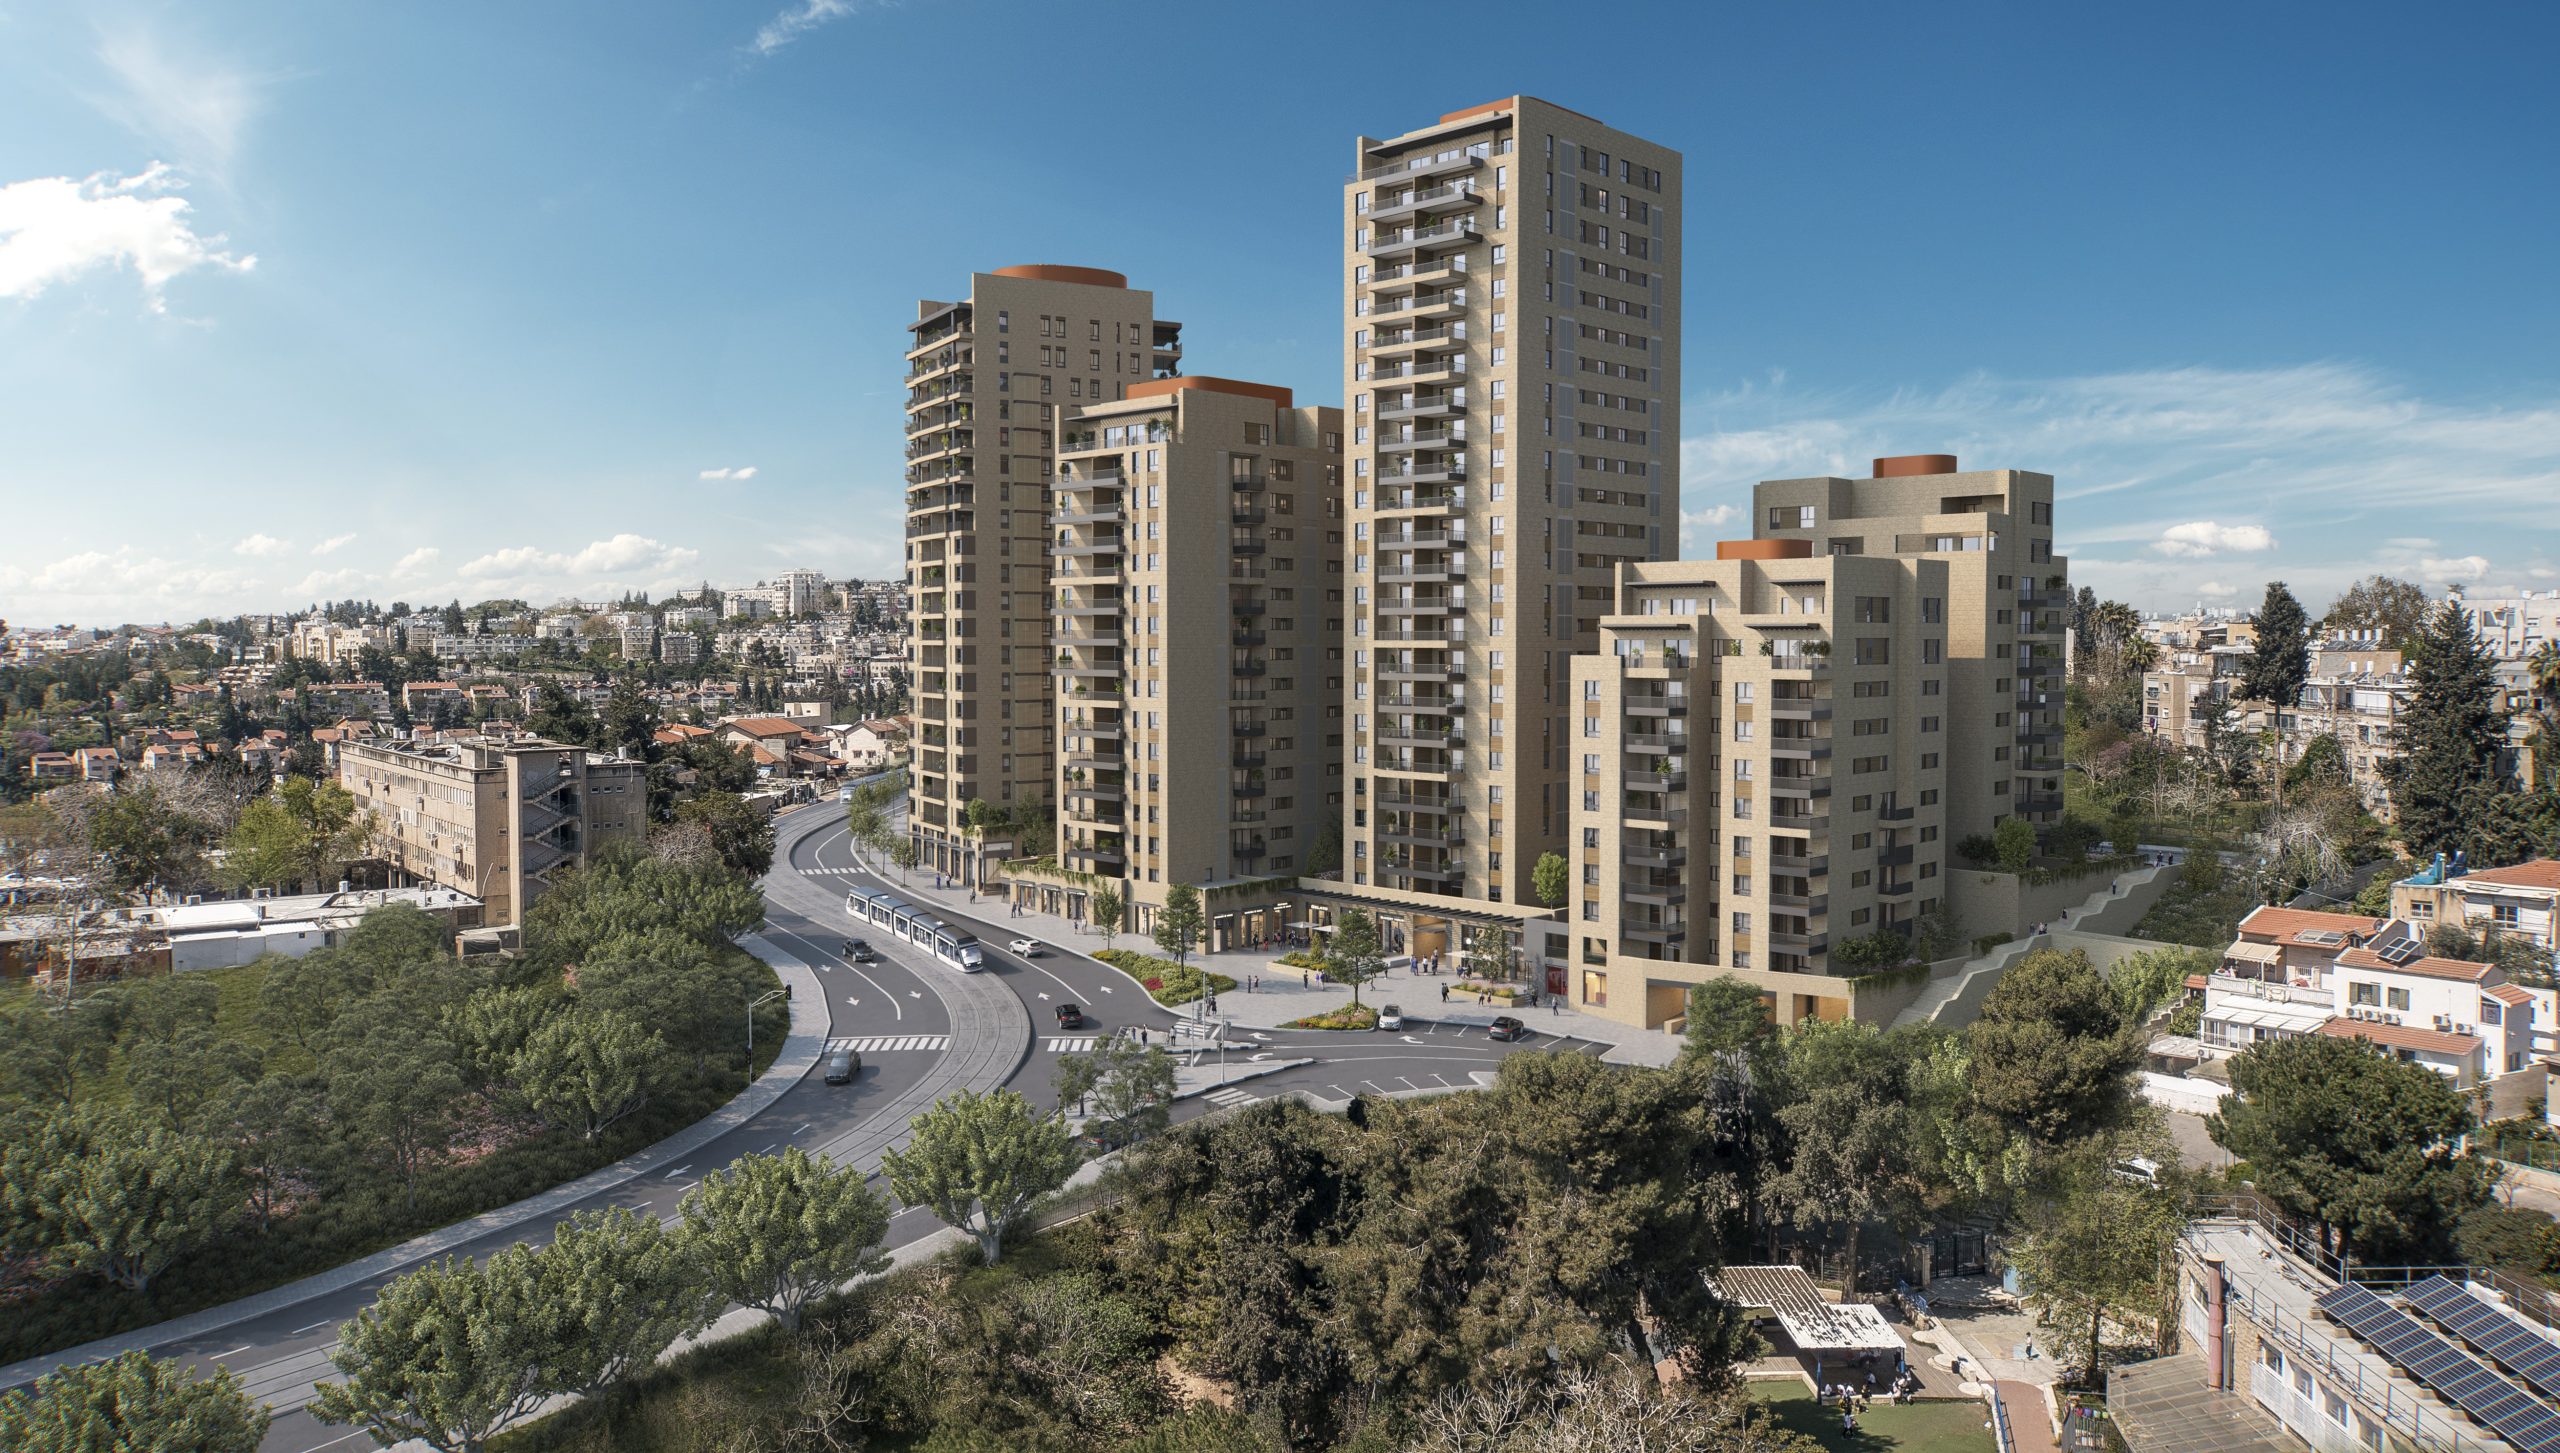 התקבל היתר בנייה למתחם השני בפרויקט 'שדרות היובל' - פרויקט 'פינוי-בינוי' הראשון  בשכונת קריית היובל בירושלים